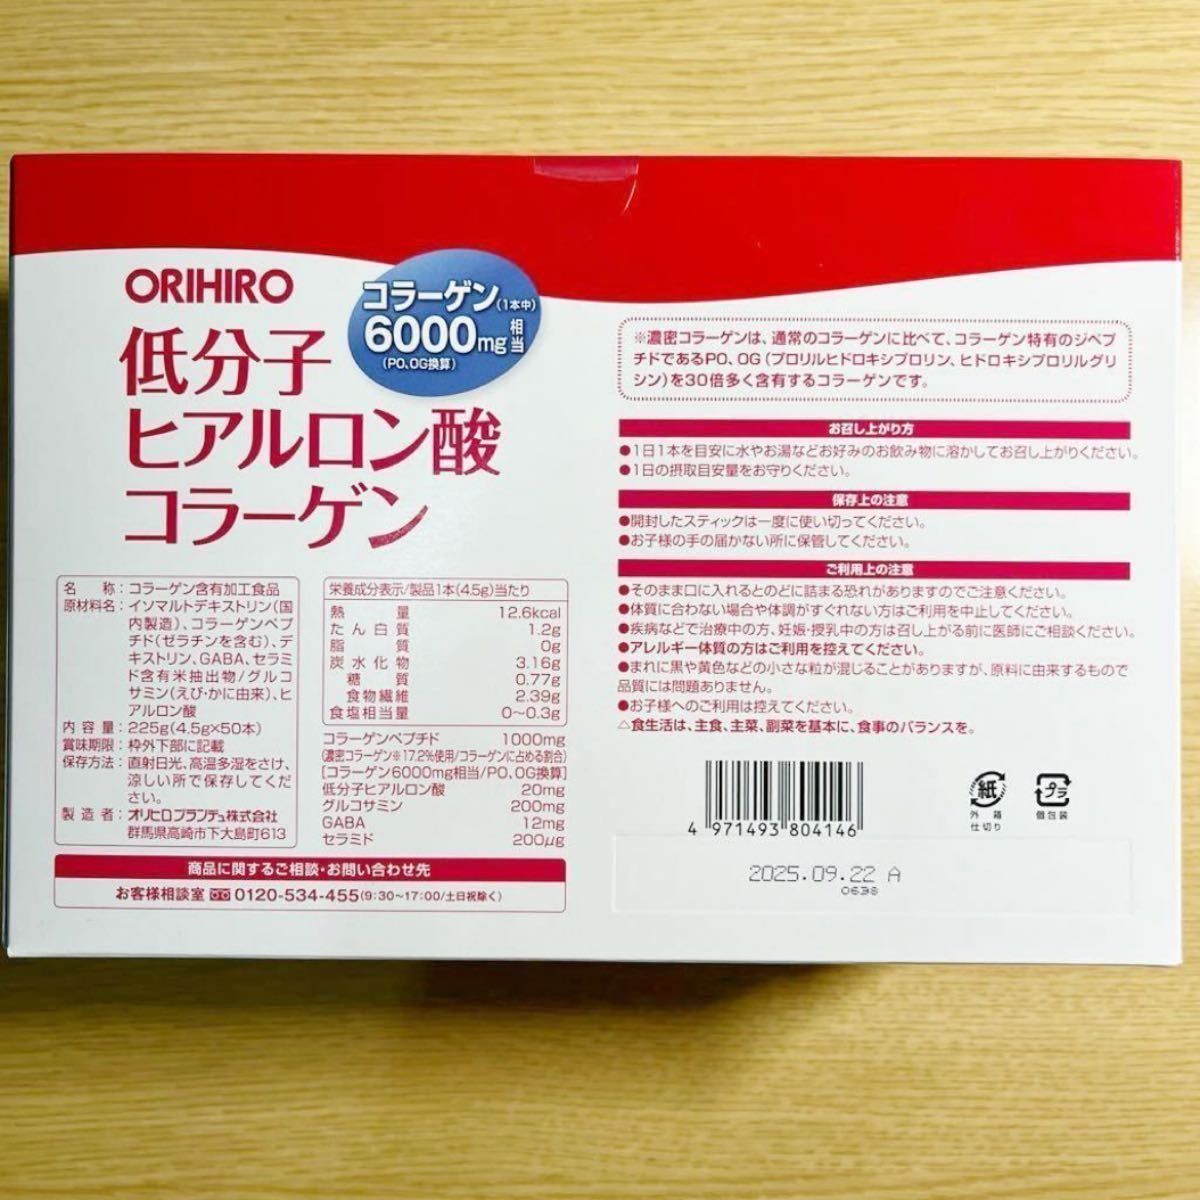 迅速発送 ORIHIRO オリヒロ低分子ヒアルロン酸コラーゲン50本●顆粒タイプ 無香料●グルコサミン GABA 食物繊維●美容